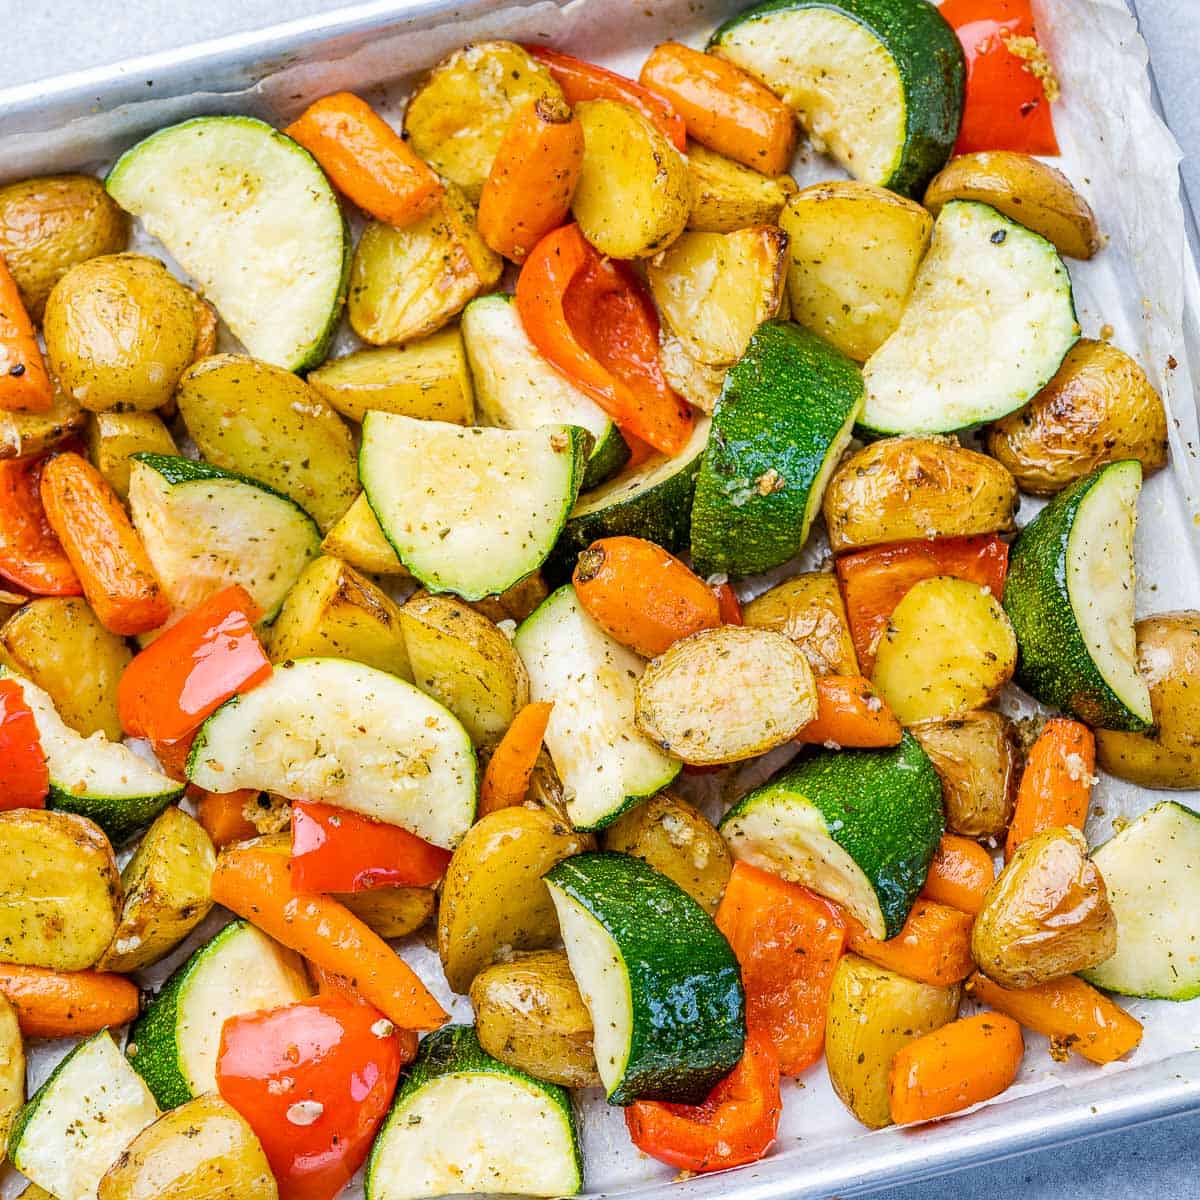 top view of roasted veggies on a baking sheet pan